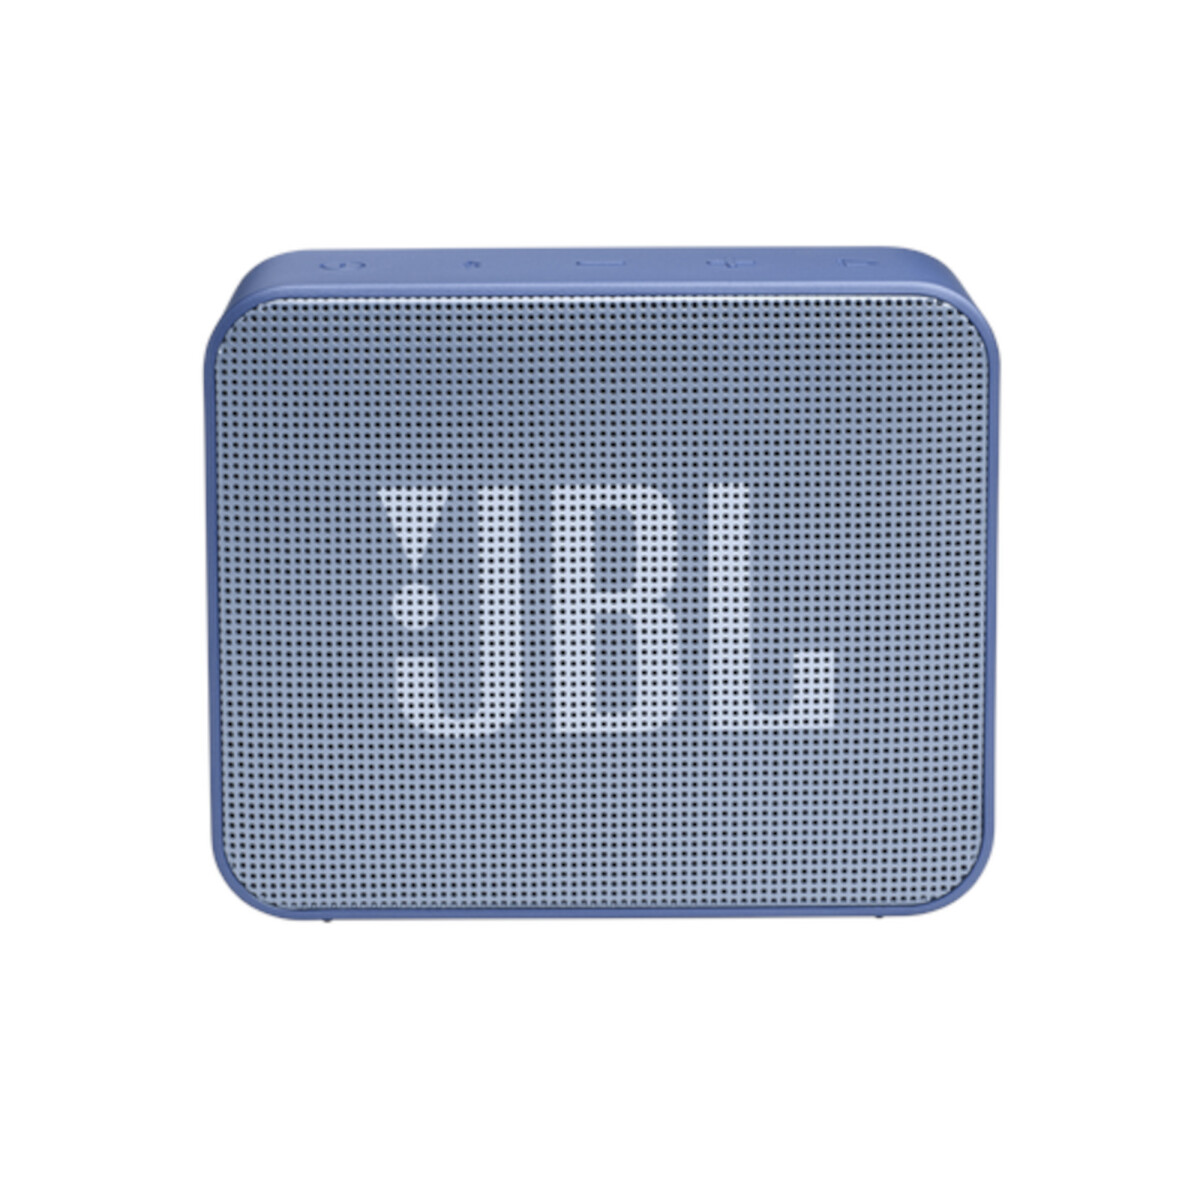 Jbl - Parlante Inalámbrico Go Essential - IPX7. Bluetooth. 3,1W. 5 Horas de Reproducción. Azul. - 001 